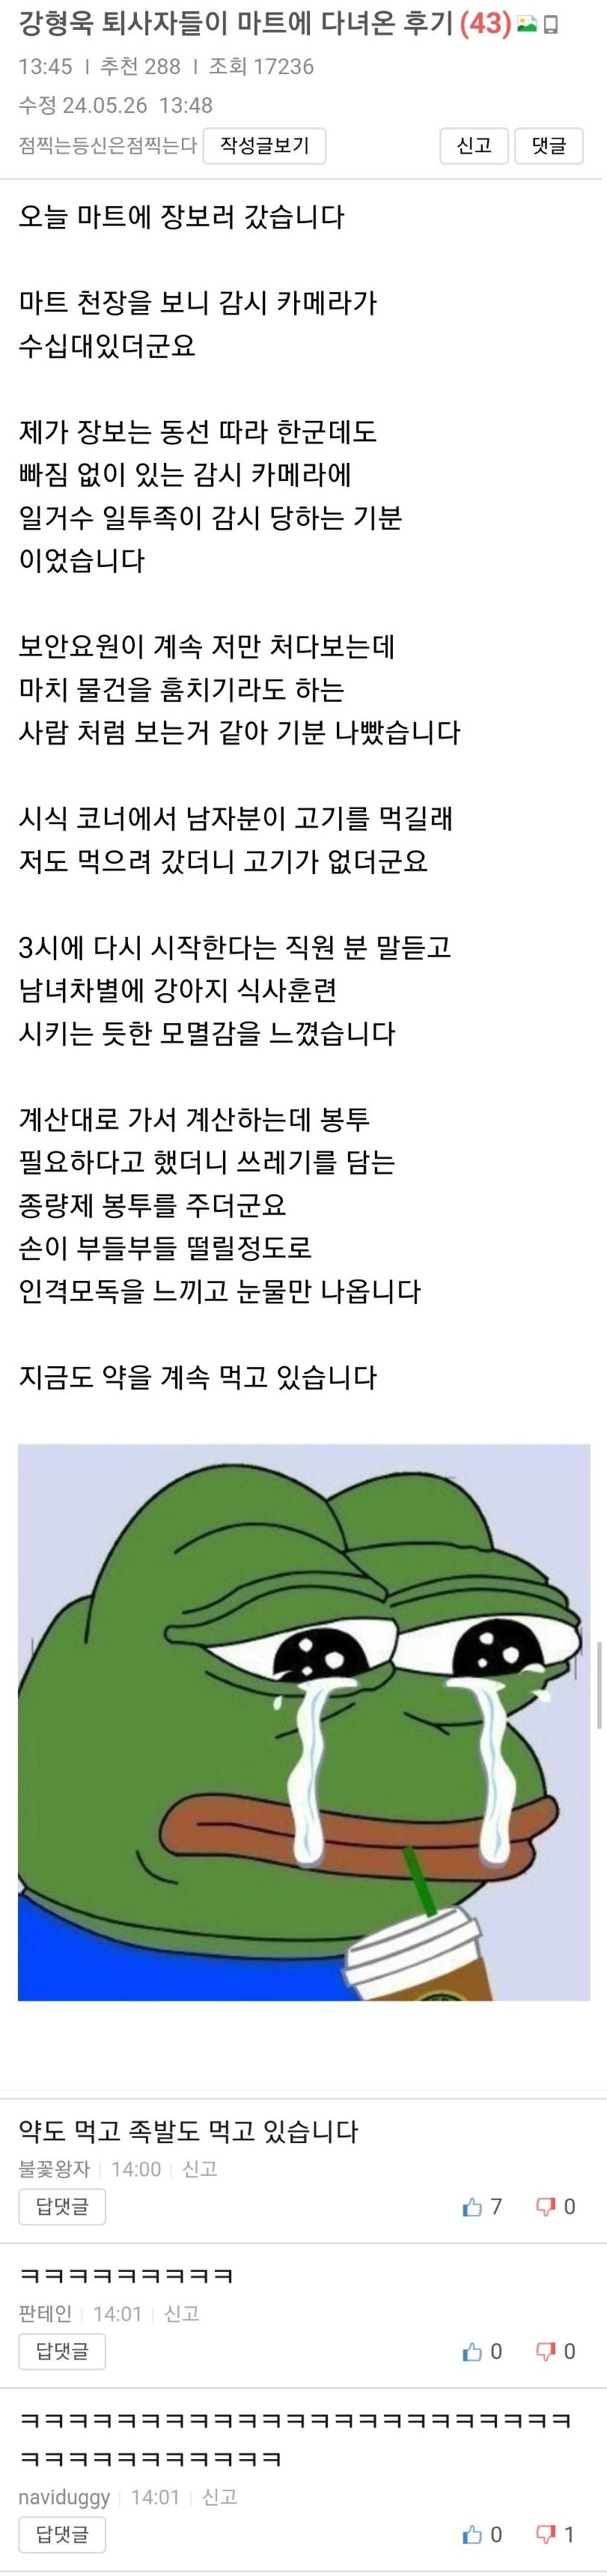 강형욱 회사 퇴사자들이 마트 다녀온 후기.jpg